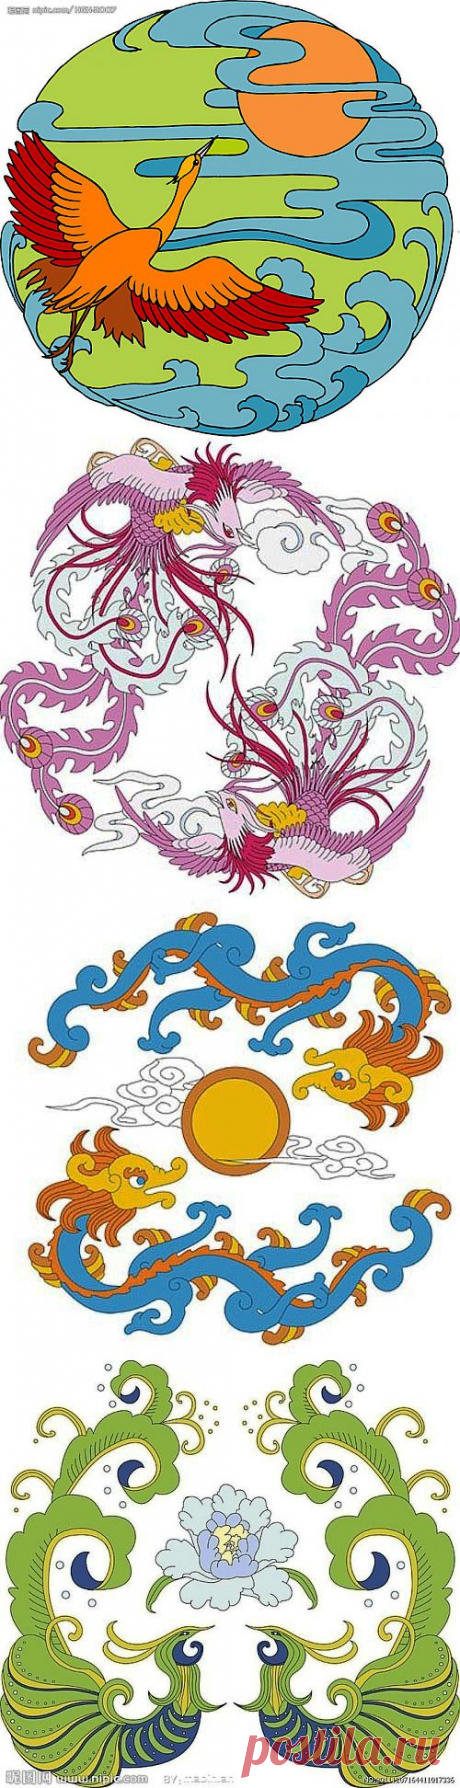 Шаблоны для росписи в китайском стиле.